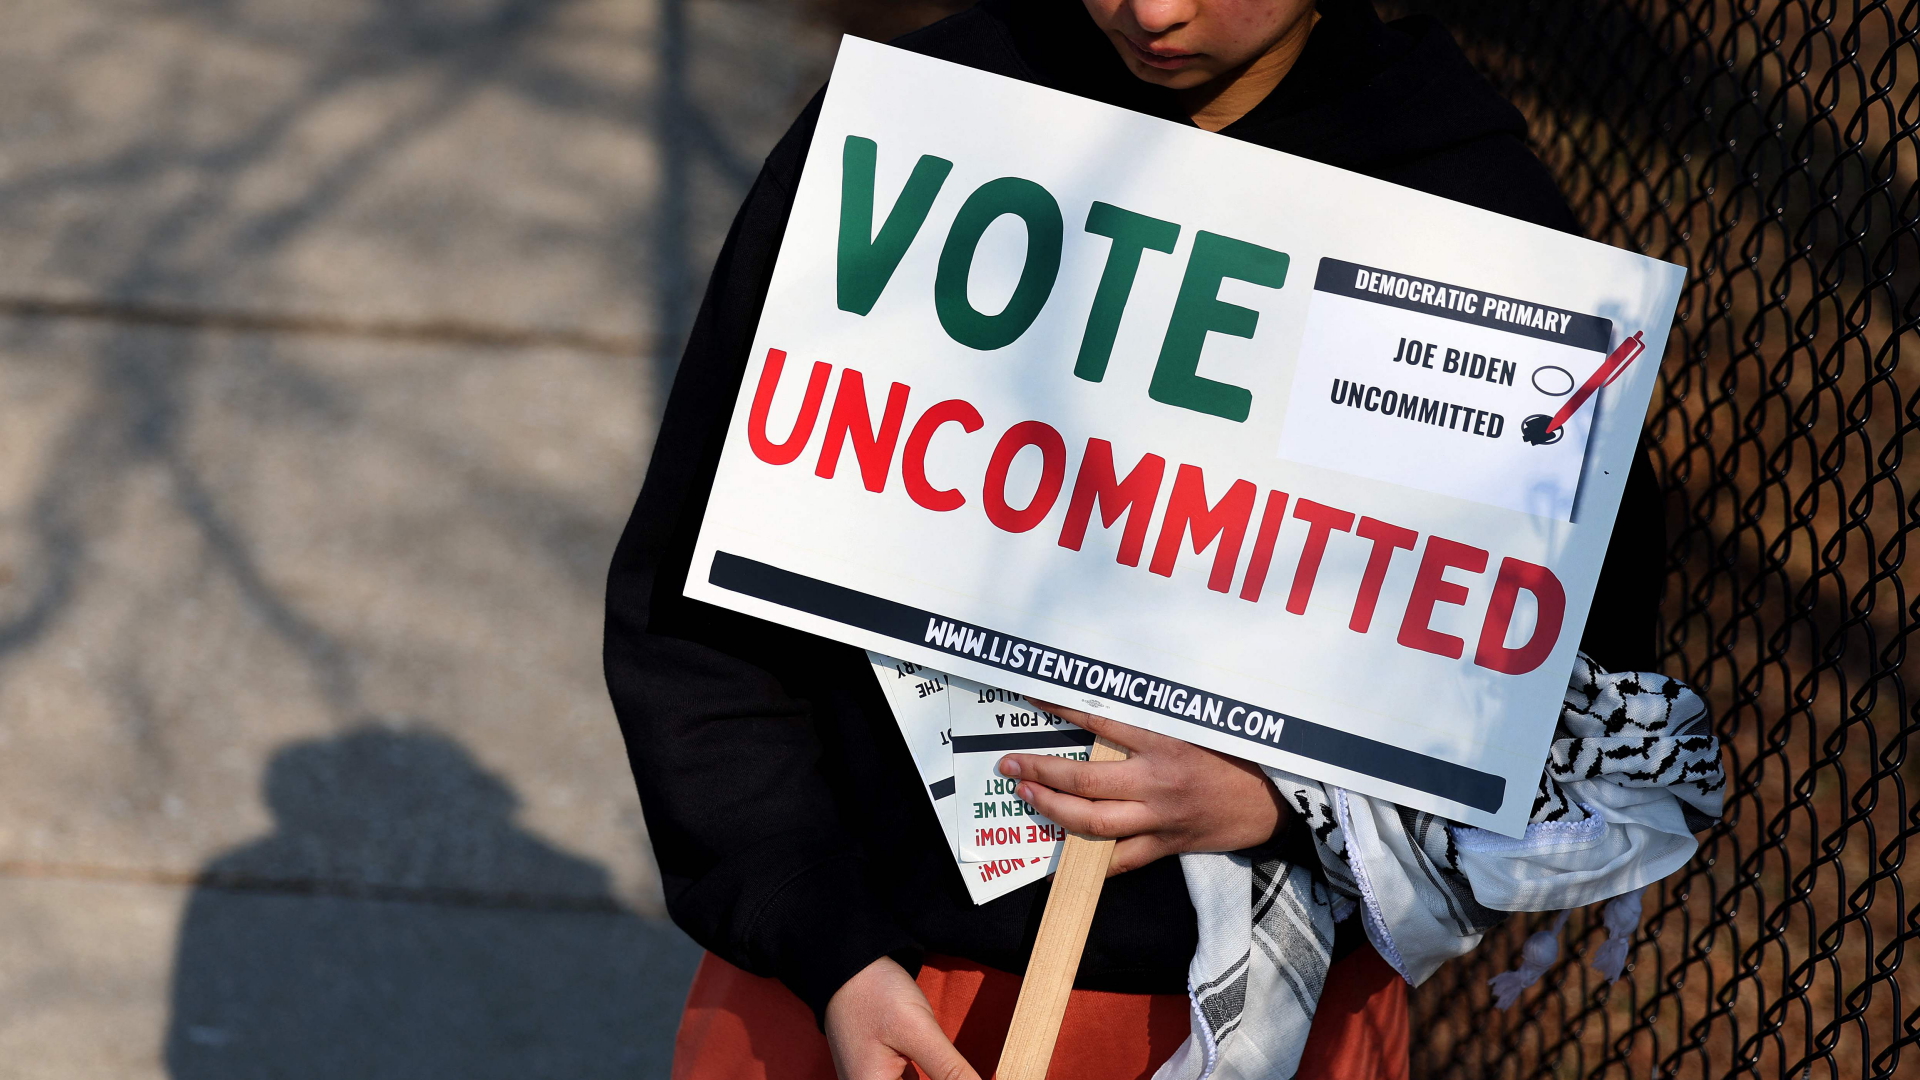 Eine Frau hält ein Schild vor einem Wahllokal in Dearborn, Michigan, hoch, auf dem dafür geworben wird "uncommited" zu stimmen.